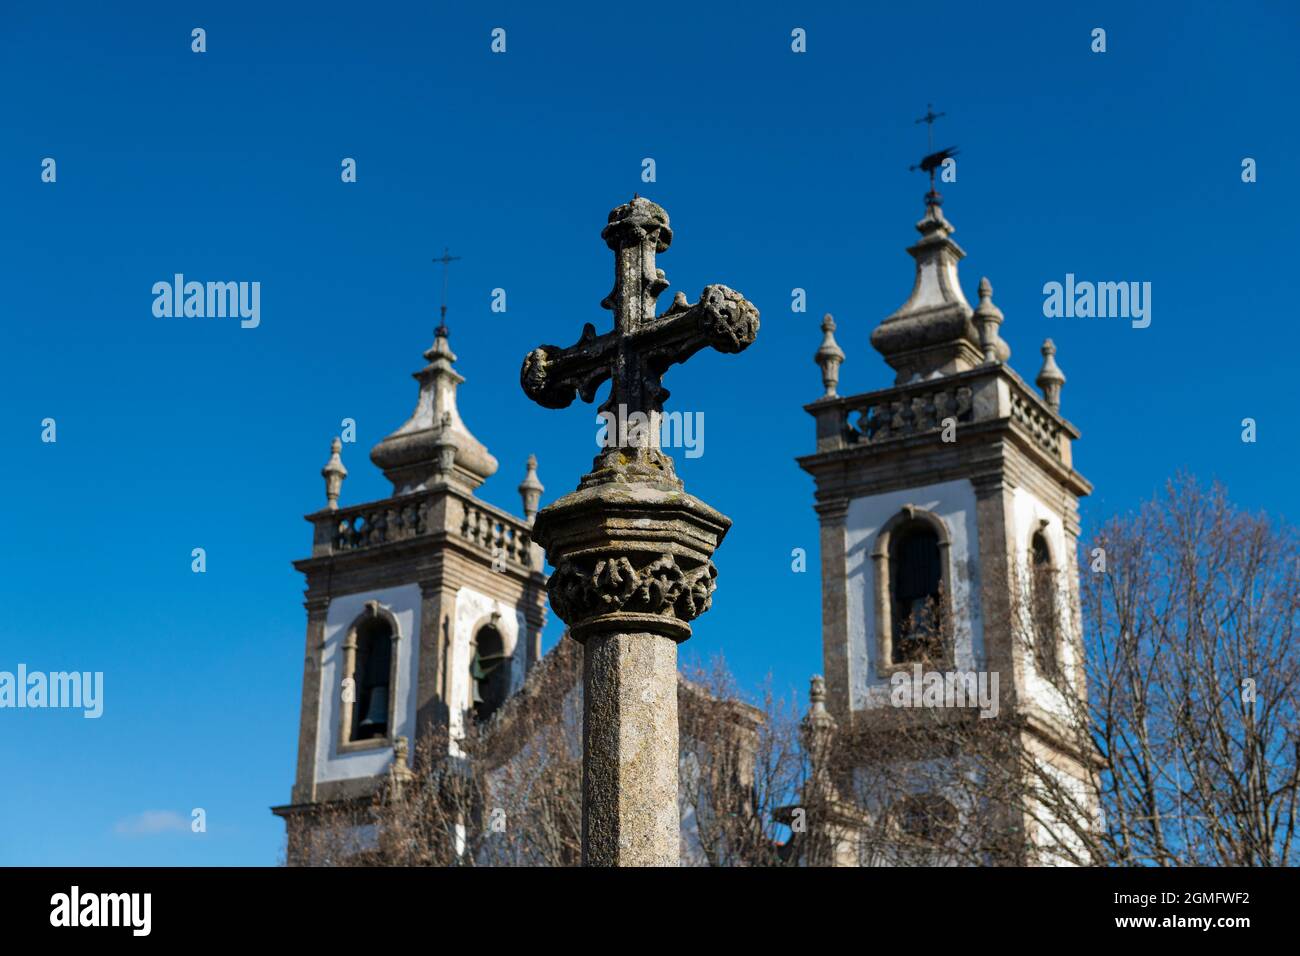 Detalle de una antigua cruz de piedra en frente de una iglesia, en la ciudad de Guarda, Portugal Foto de stock